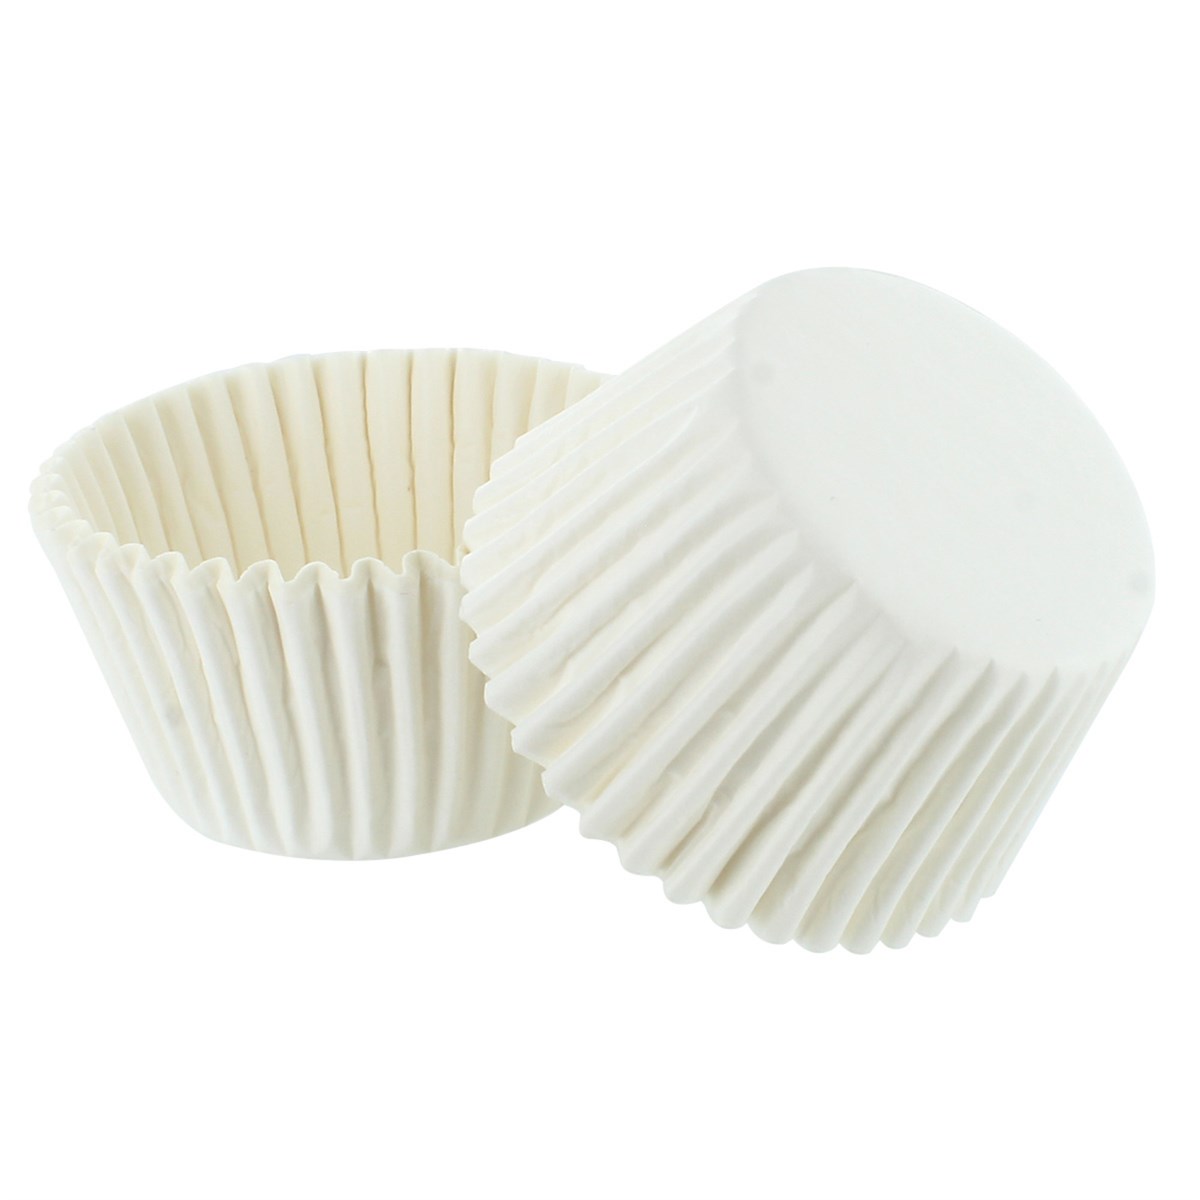 White Cupcake Baking Cases - Bulk pack of 250